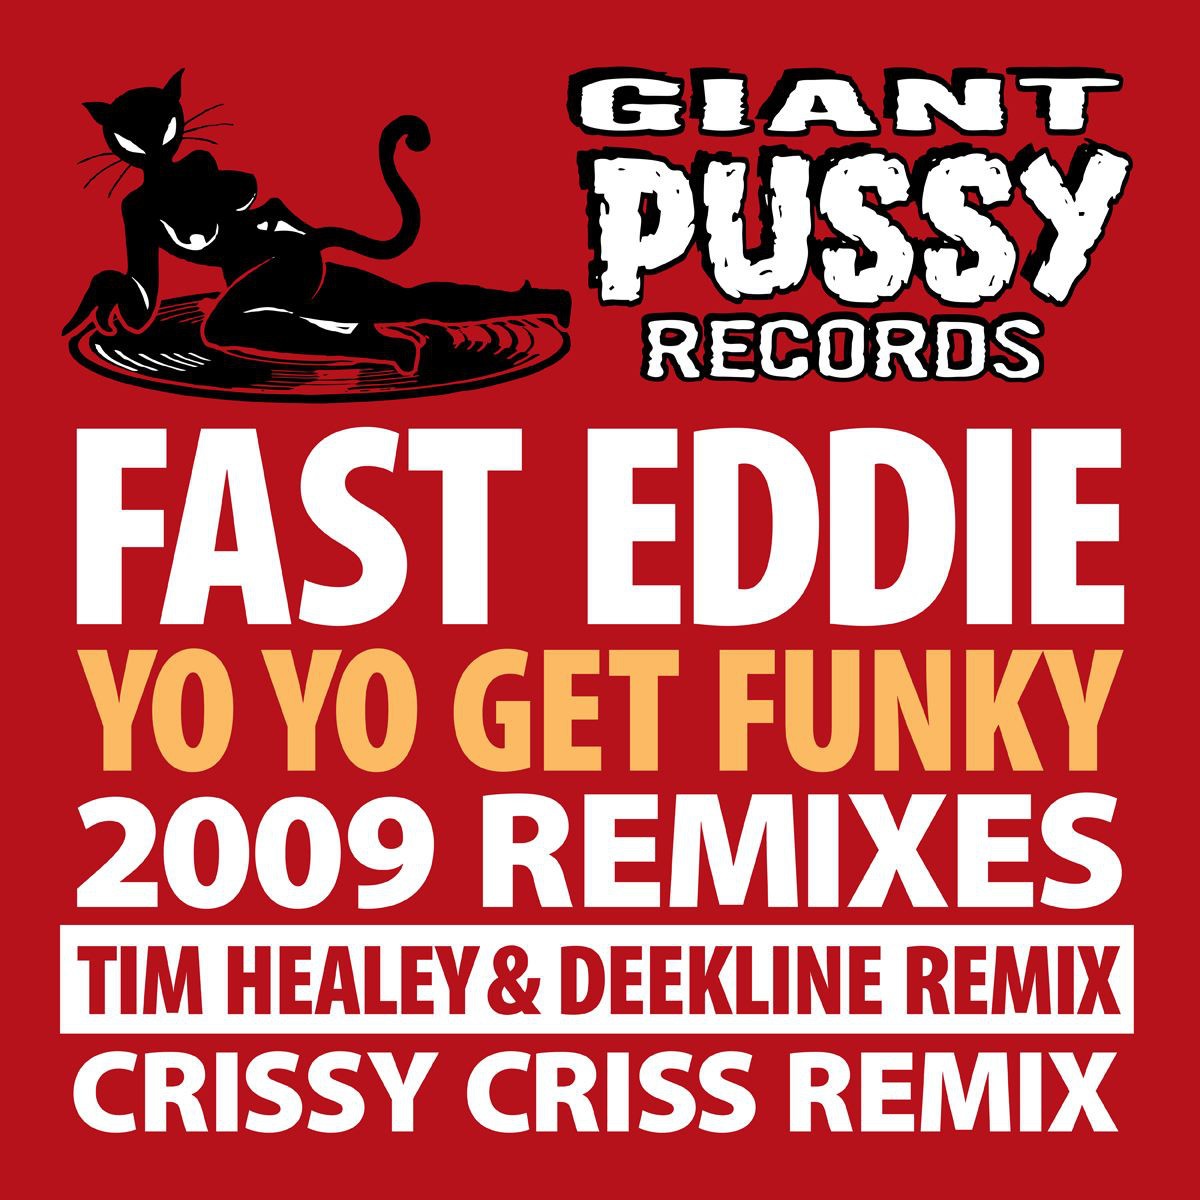 Yo Yo Get Funky - Tim Healey & Deekline Remix